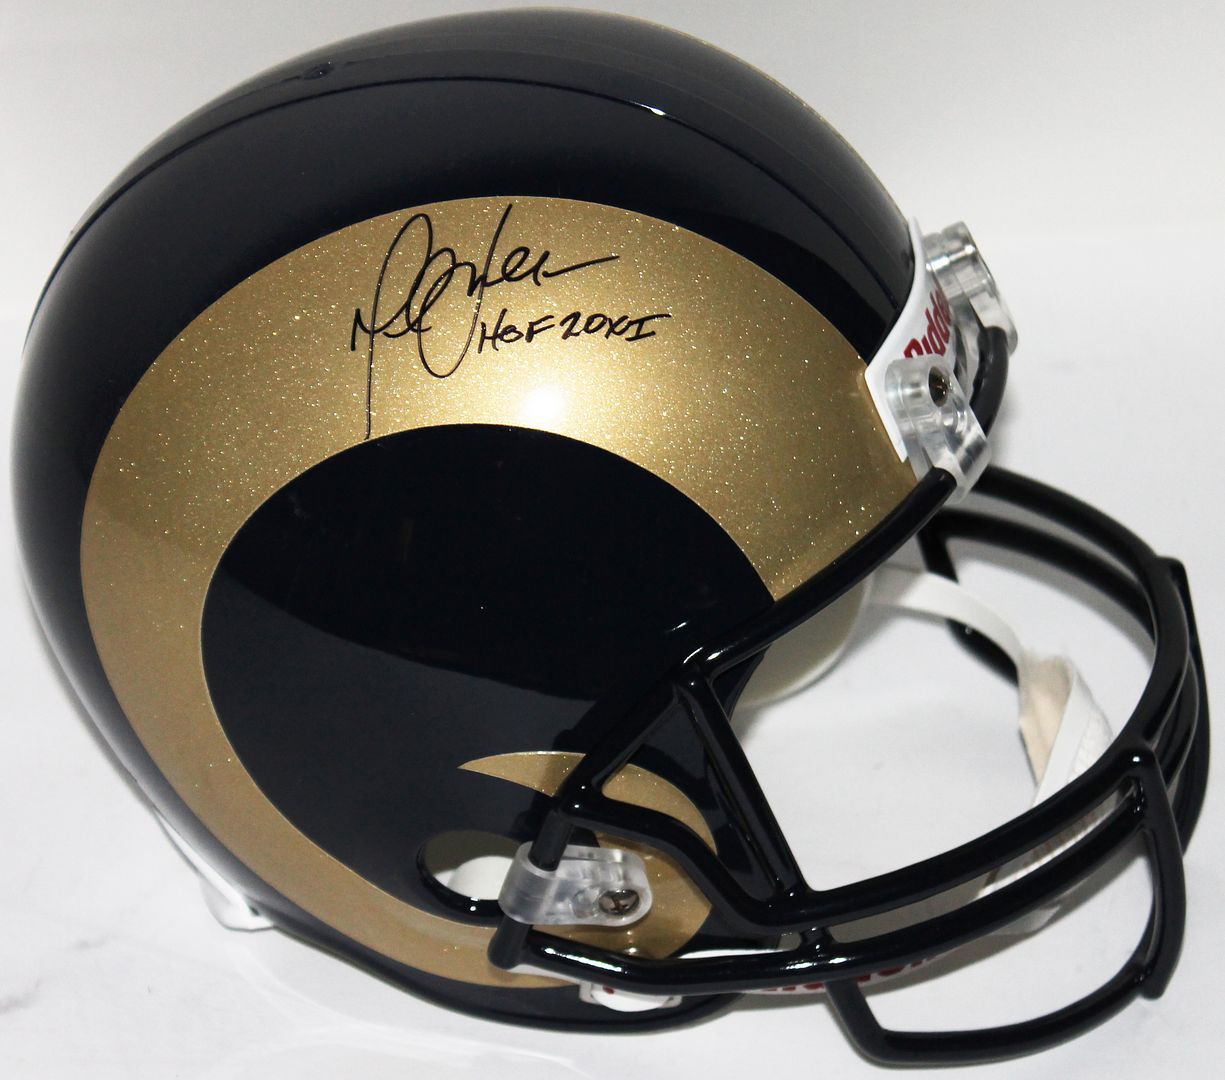 Rams Marshall Faulk "HOF 201i" Authentic Signed Full Size Rep Helmet PSA DNA